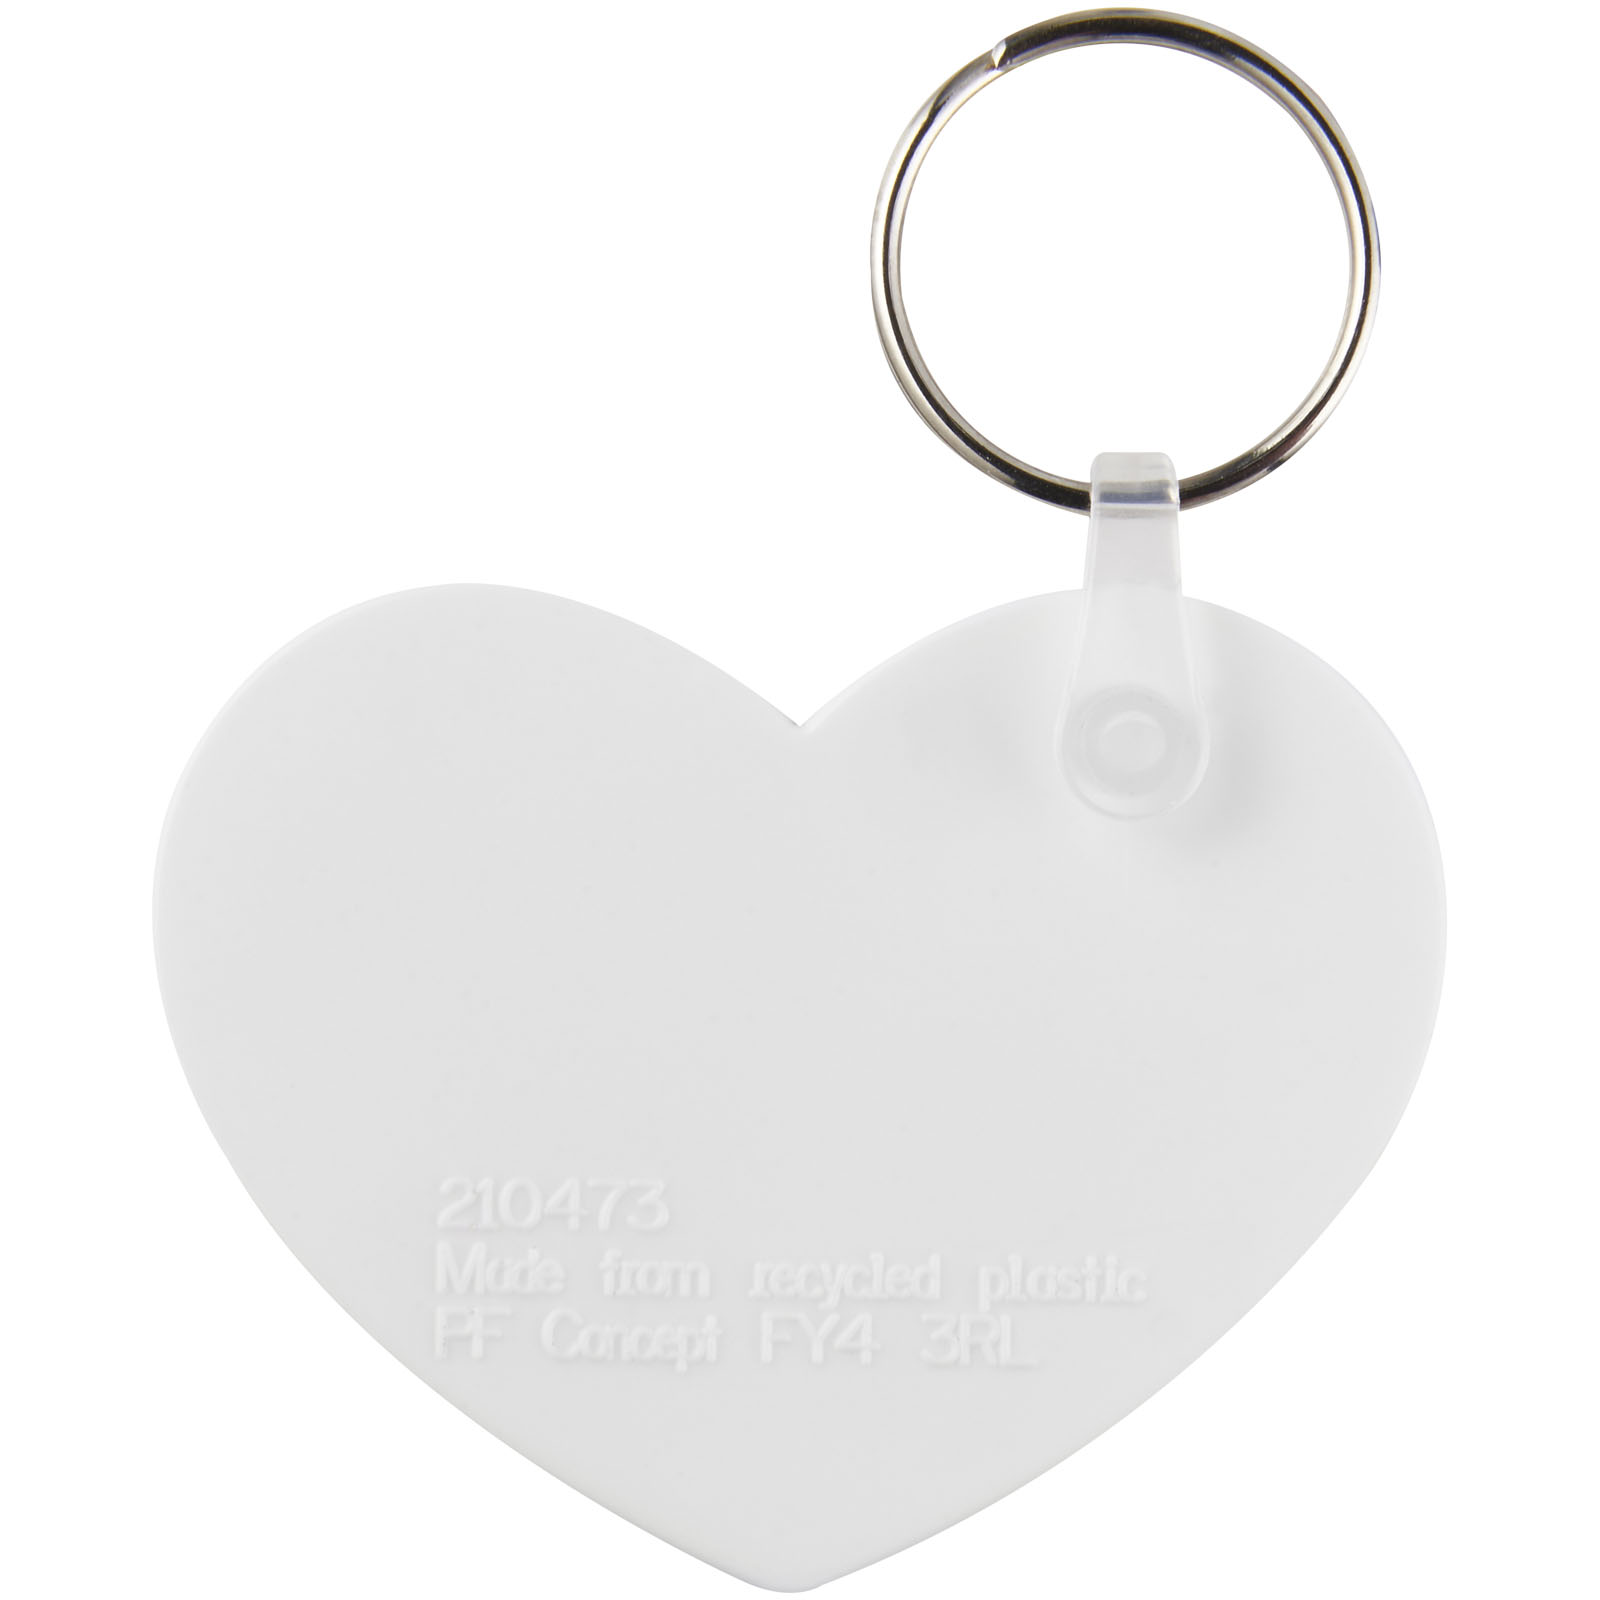 Porte-clés publicitaires - Porte-clés recyclé Taiten forme de cœur - 2